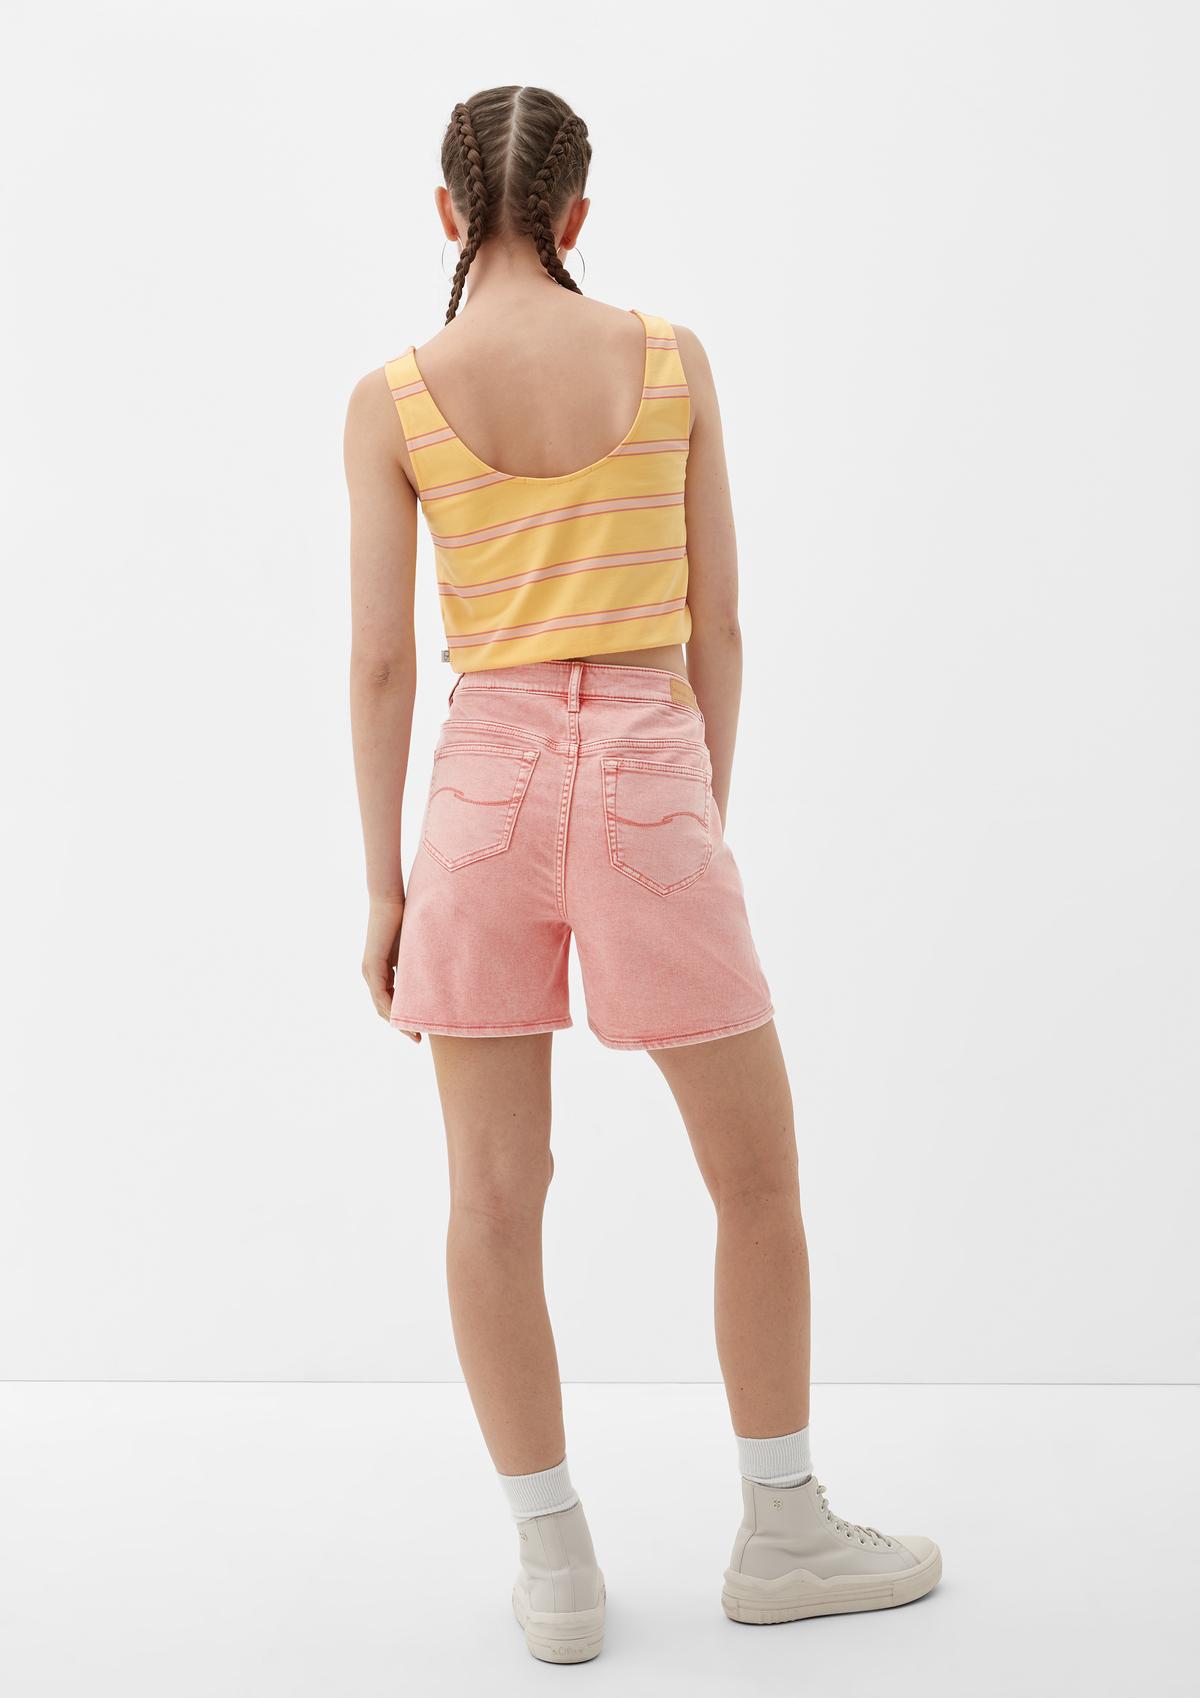 s.Oliver Mom fit: denim shorts with offset belt loops